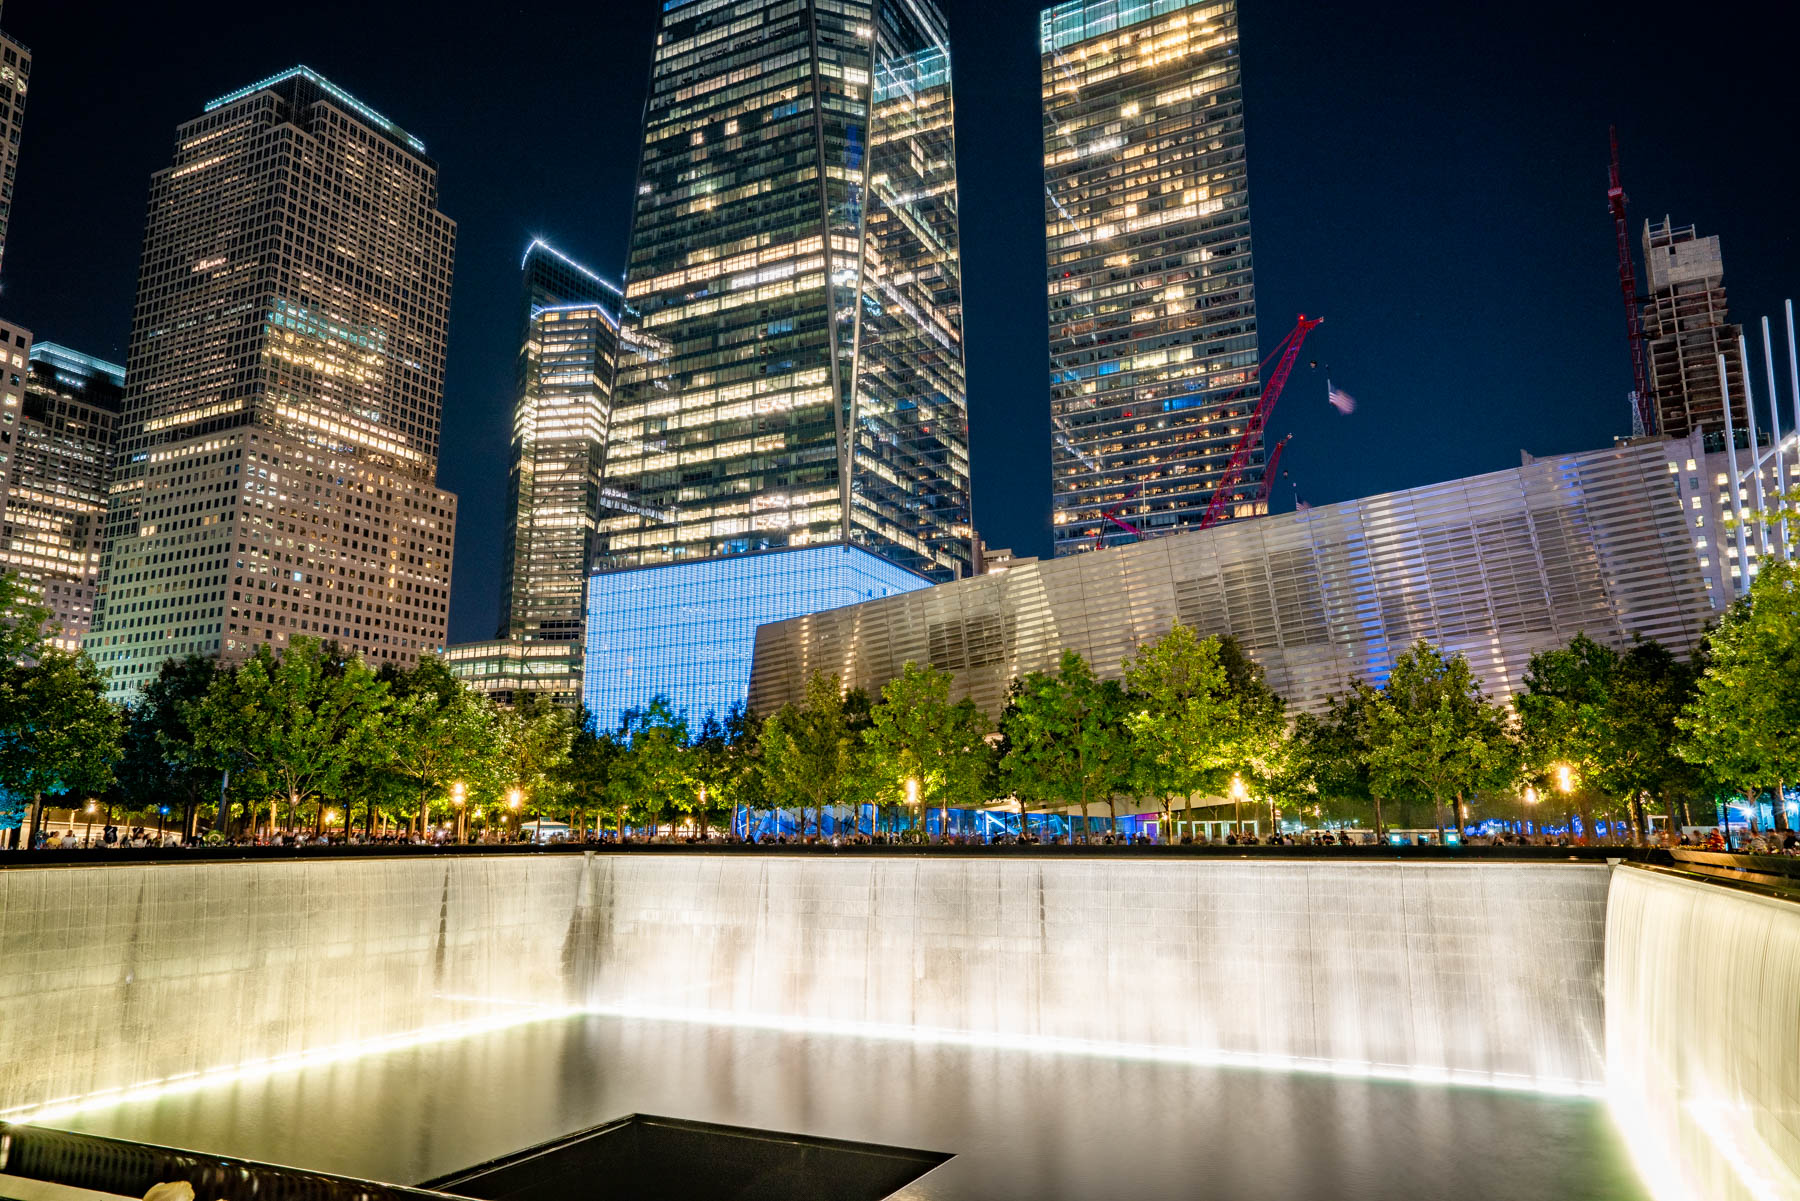 Mejores cosas que hacer en Nueva York, 9/11 Memorial